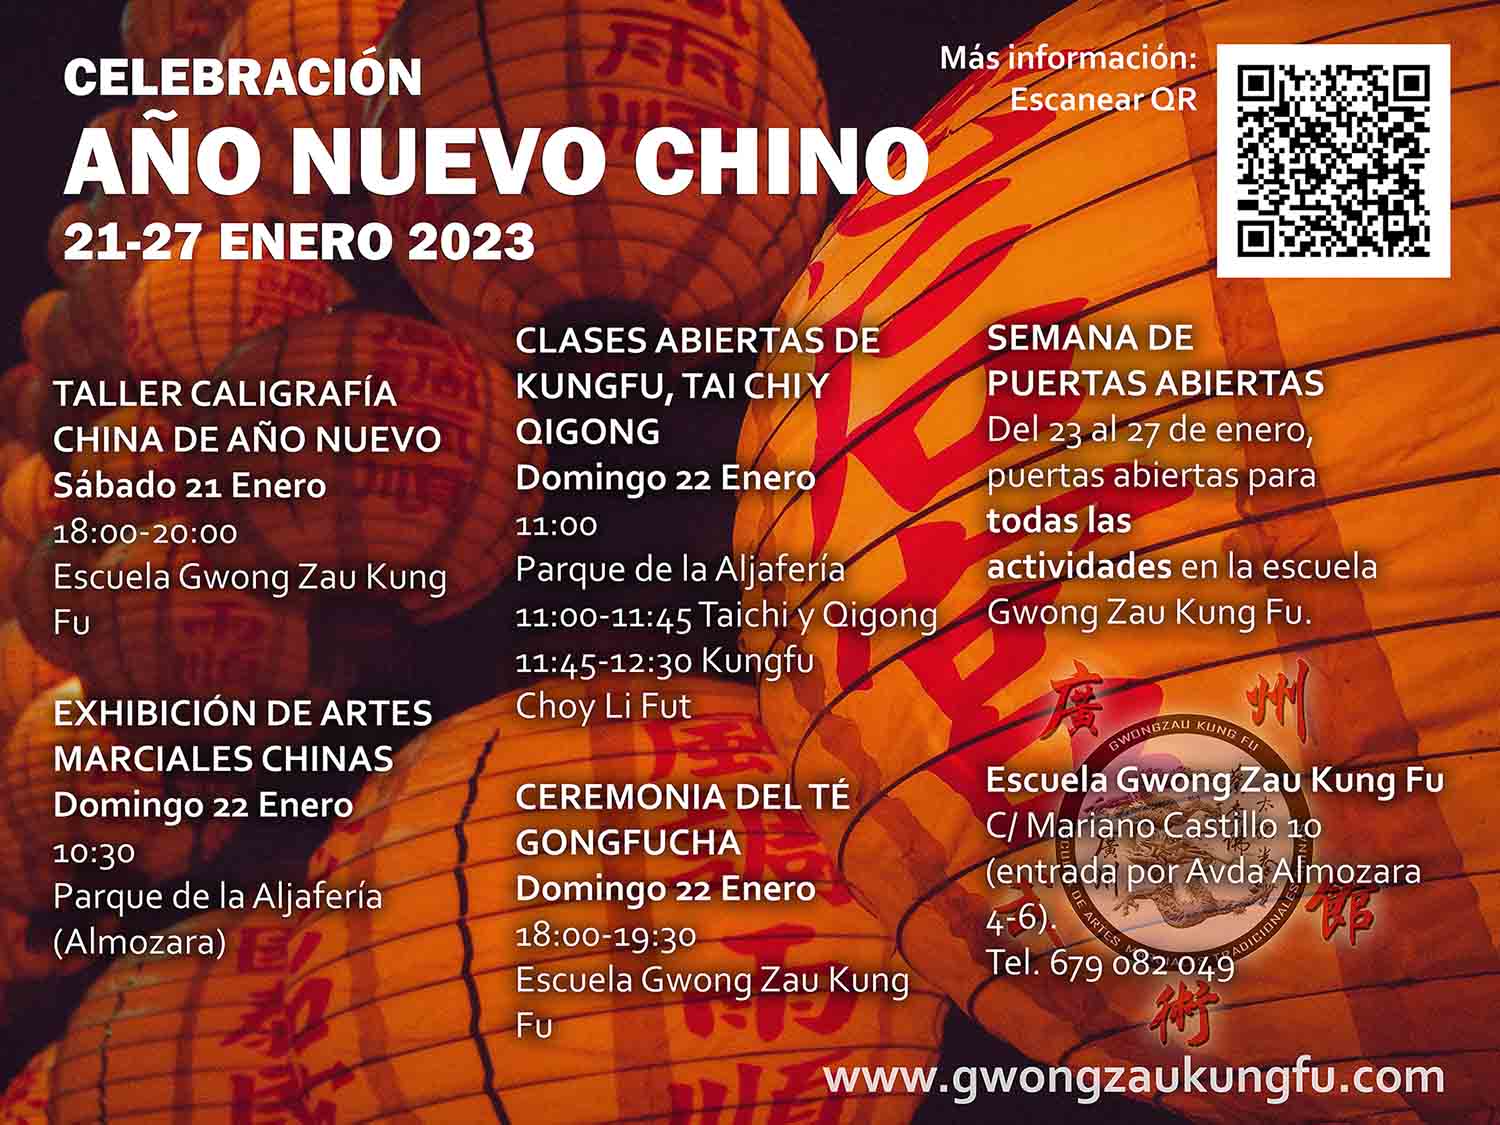 Celebracion Ano Nuevo Chino 2023 - Jornadas Año Nuevo Chino 2023